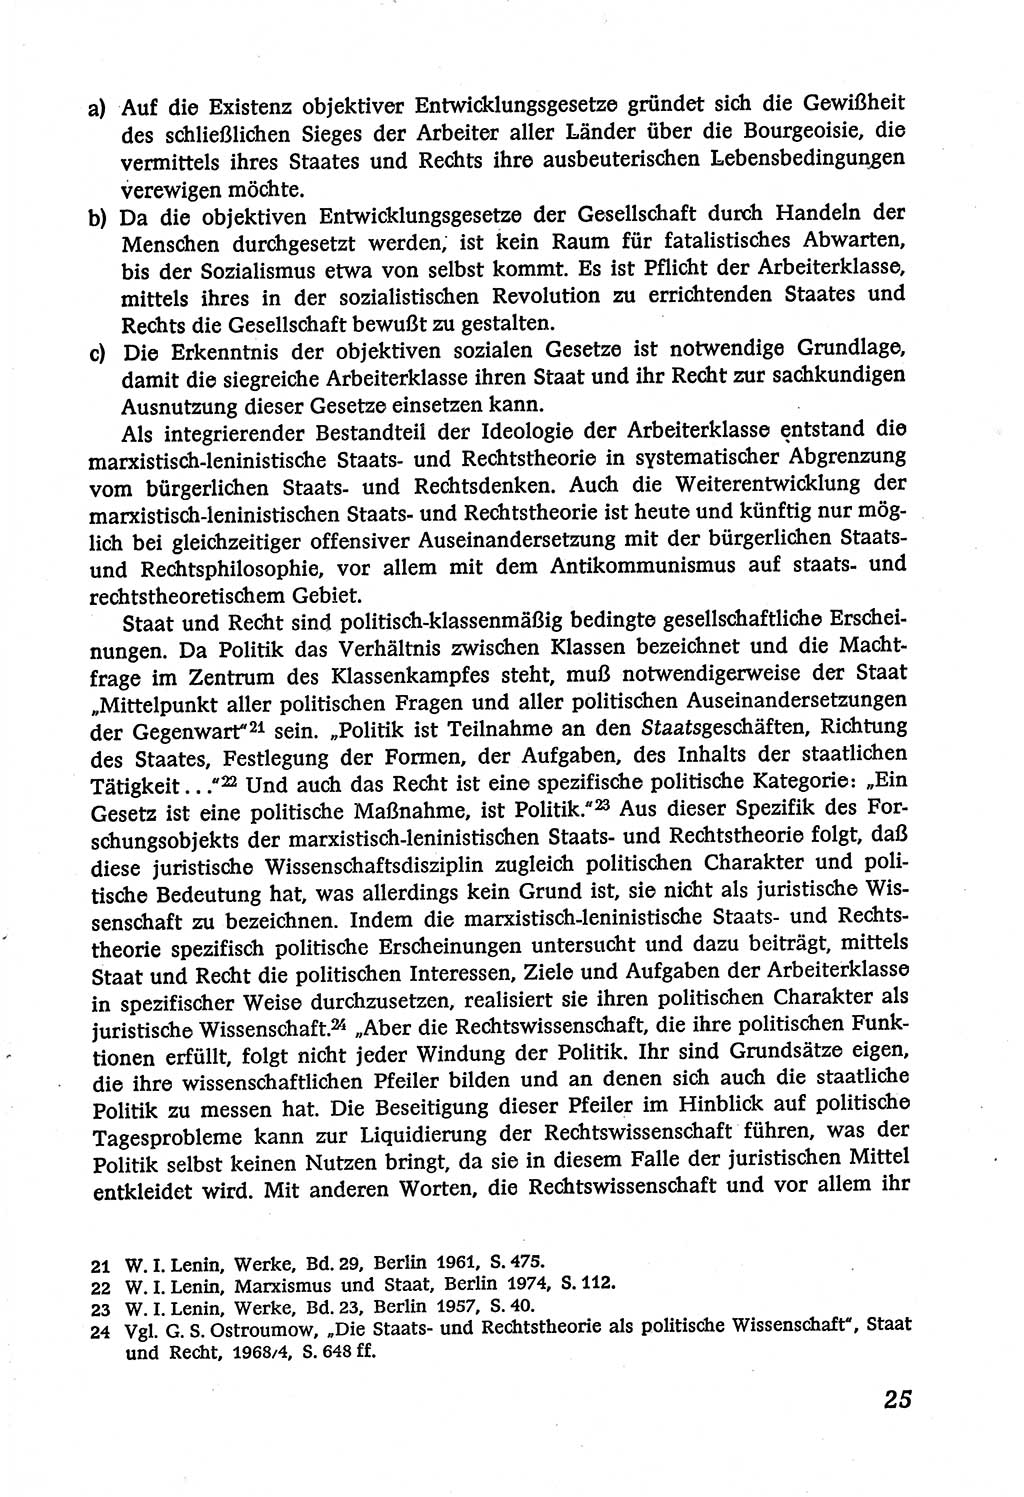 Marxistisch-leninistische (ML) Staats- und Rechtstheorie [Deutsche Demokratische Republik (DDR)], Lehrbuch 1980, Seite 25 (ML St.-R.-Th. DDR Lb. 1980, S. 25)